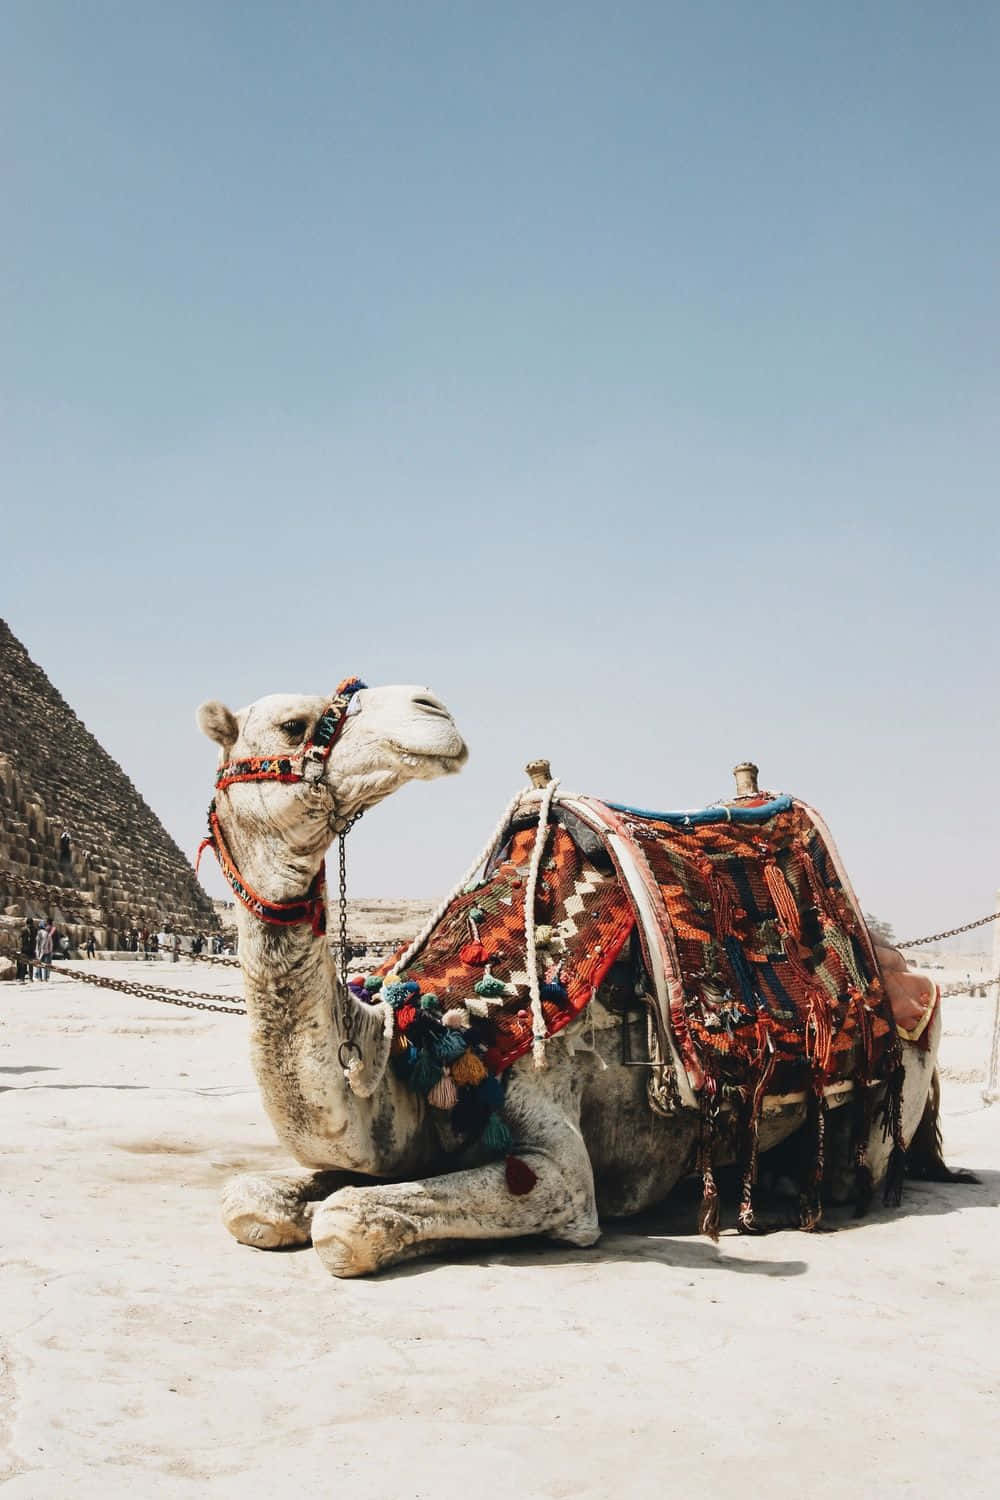 A camel roaming in the desert